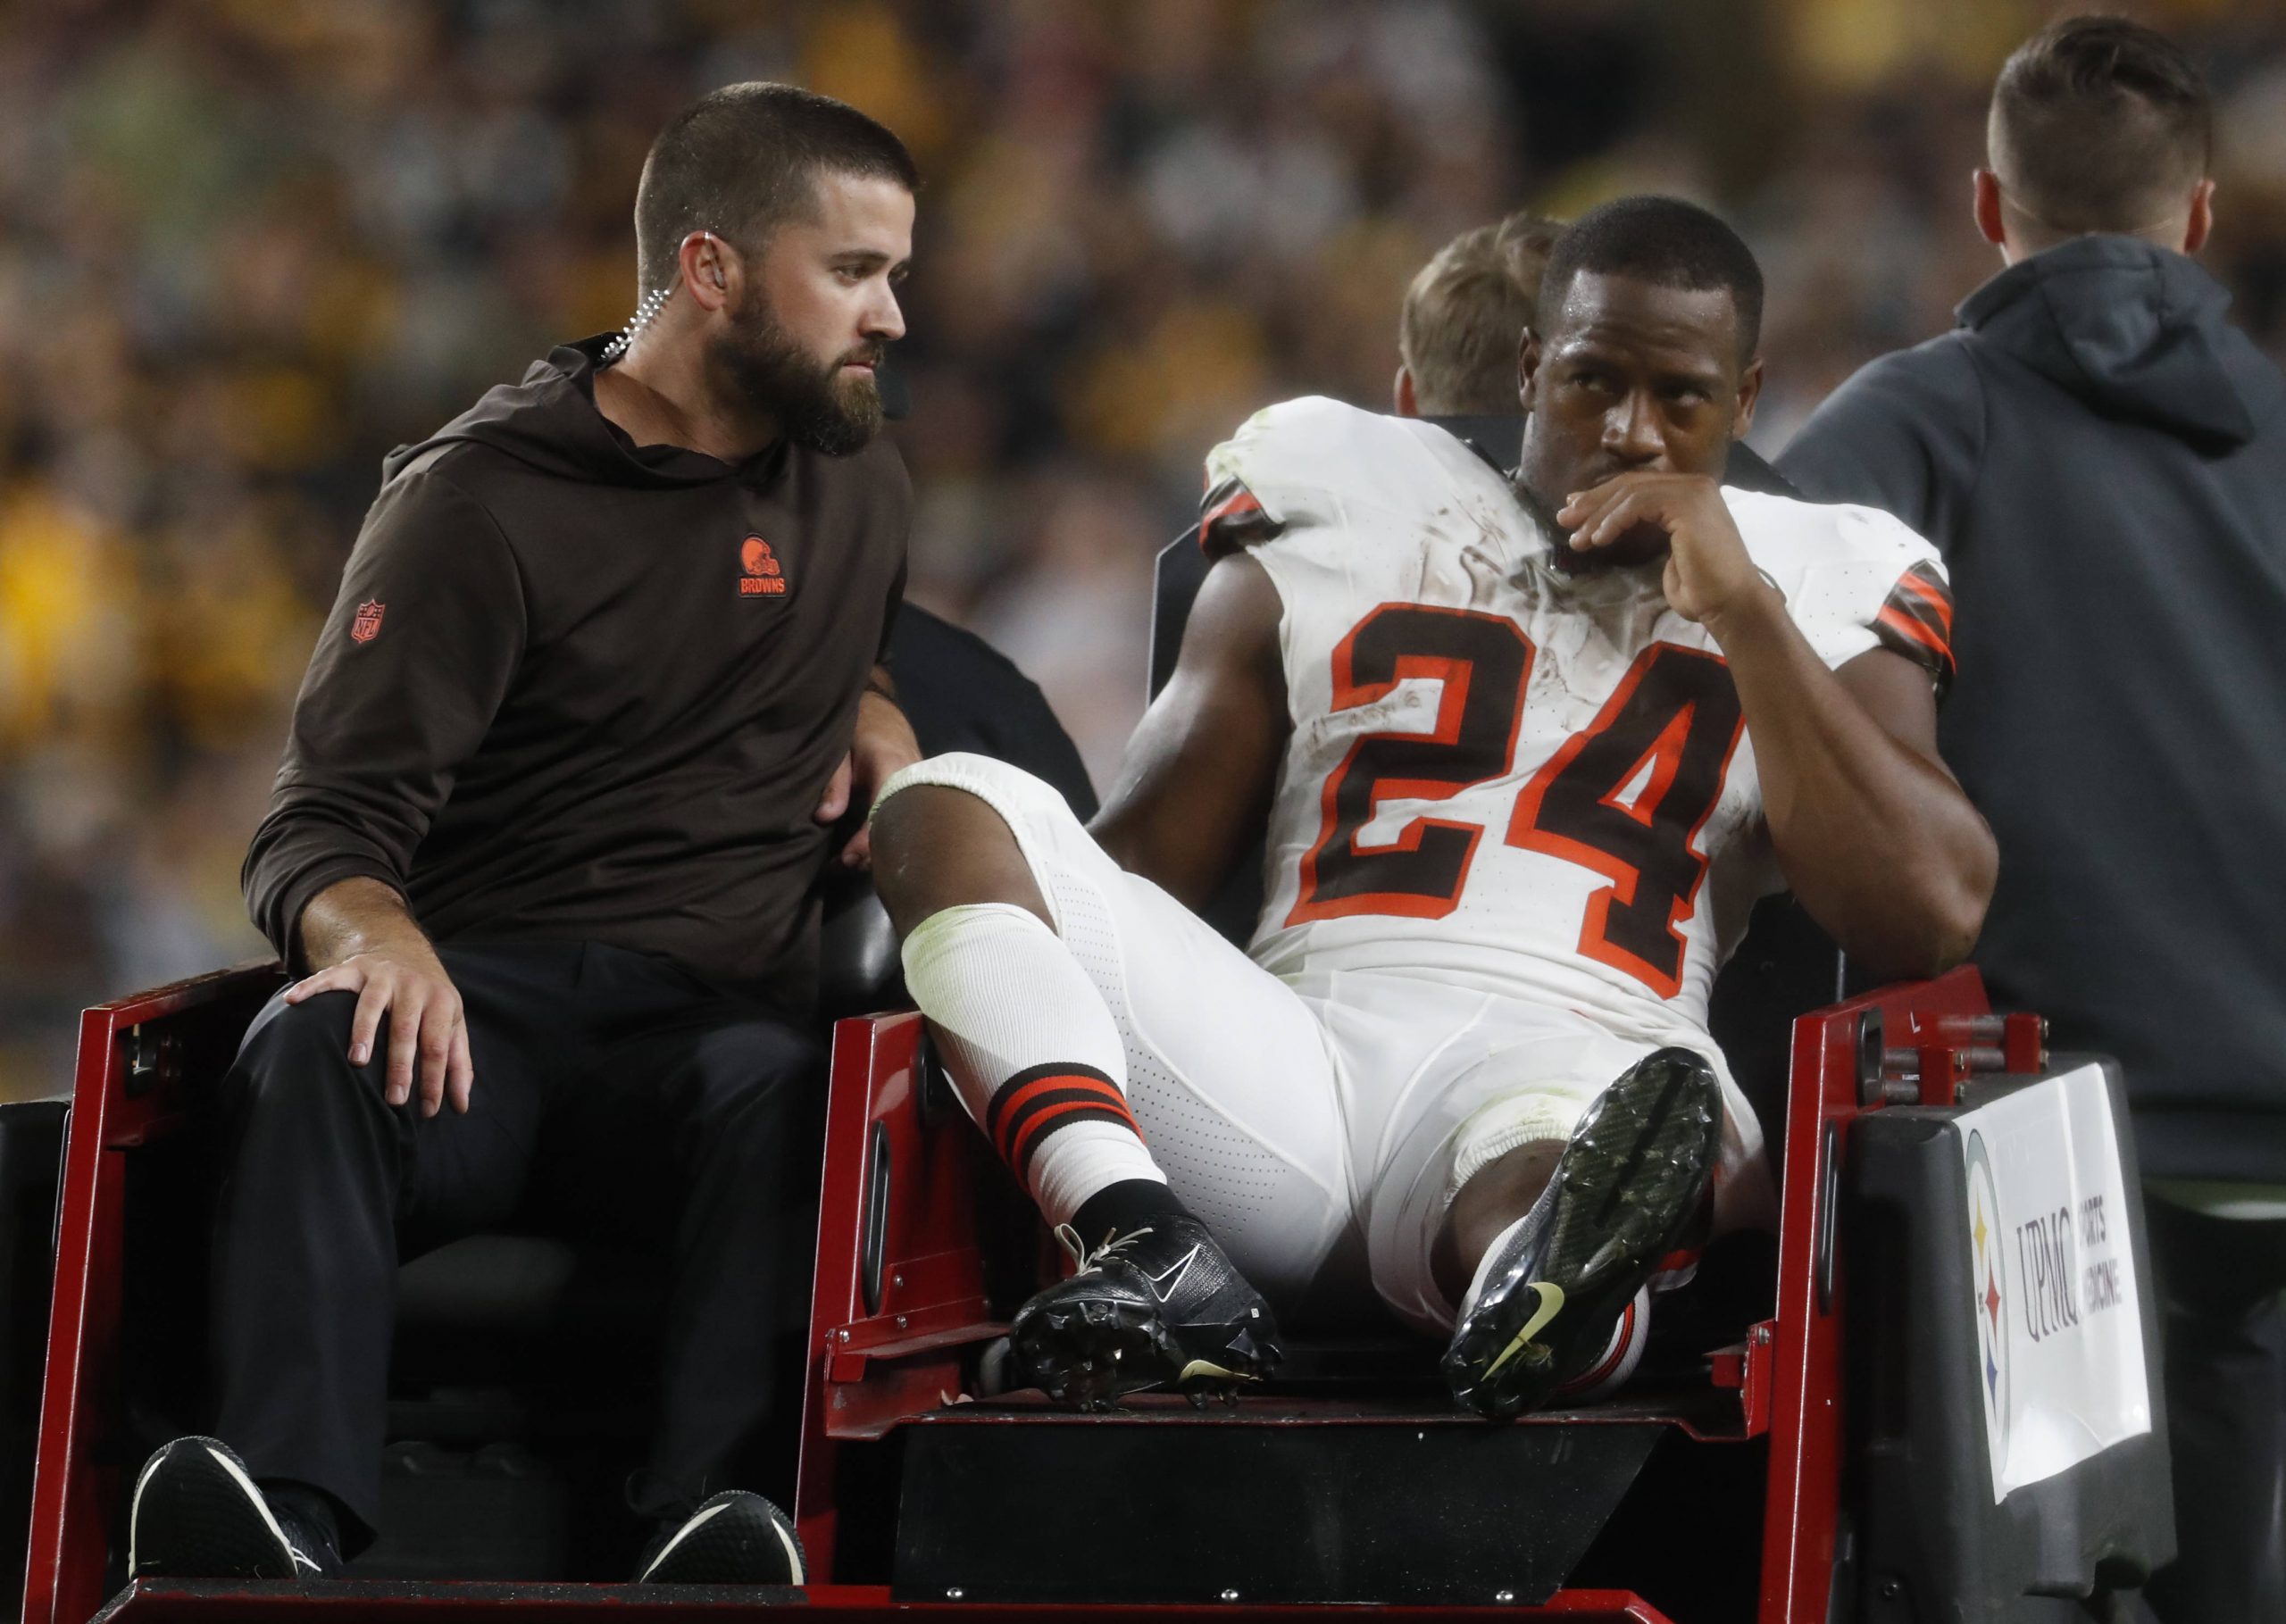 FootballR - NFL - Schlüsselwörter: Cleveland Browns, Spieler Nick Chubb Ein Spieler der Cleveland Browns ist verletzt und seine Saison könnte vorzeitig enden.